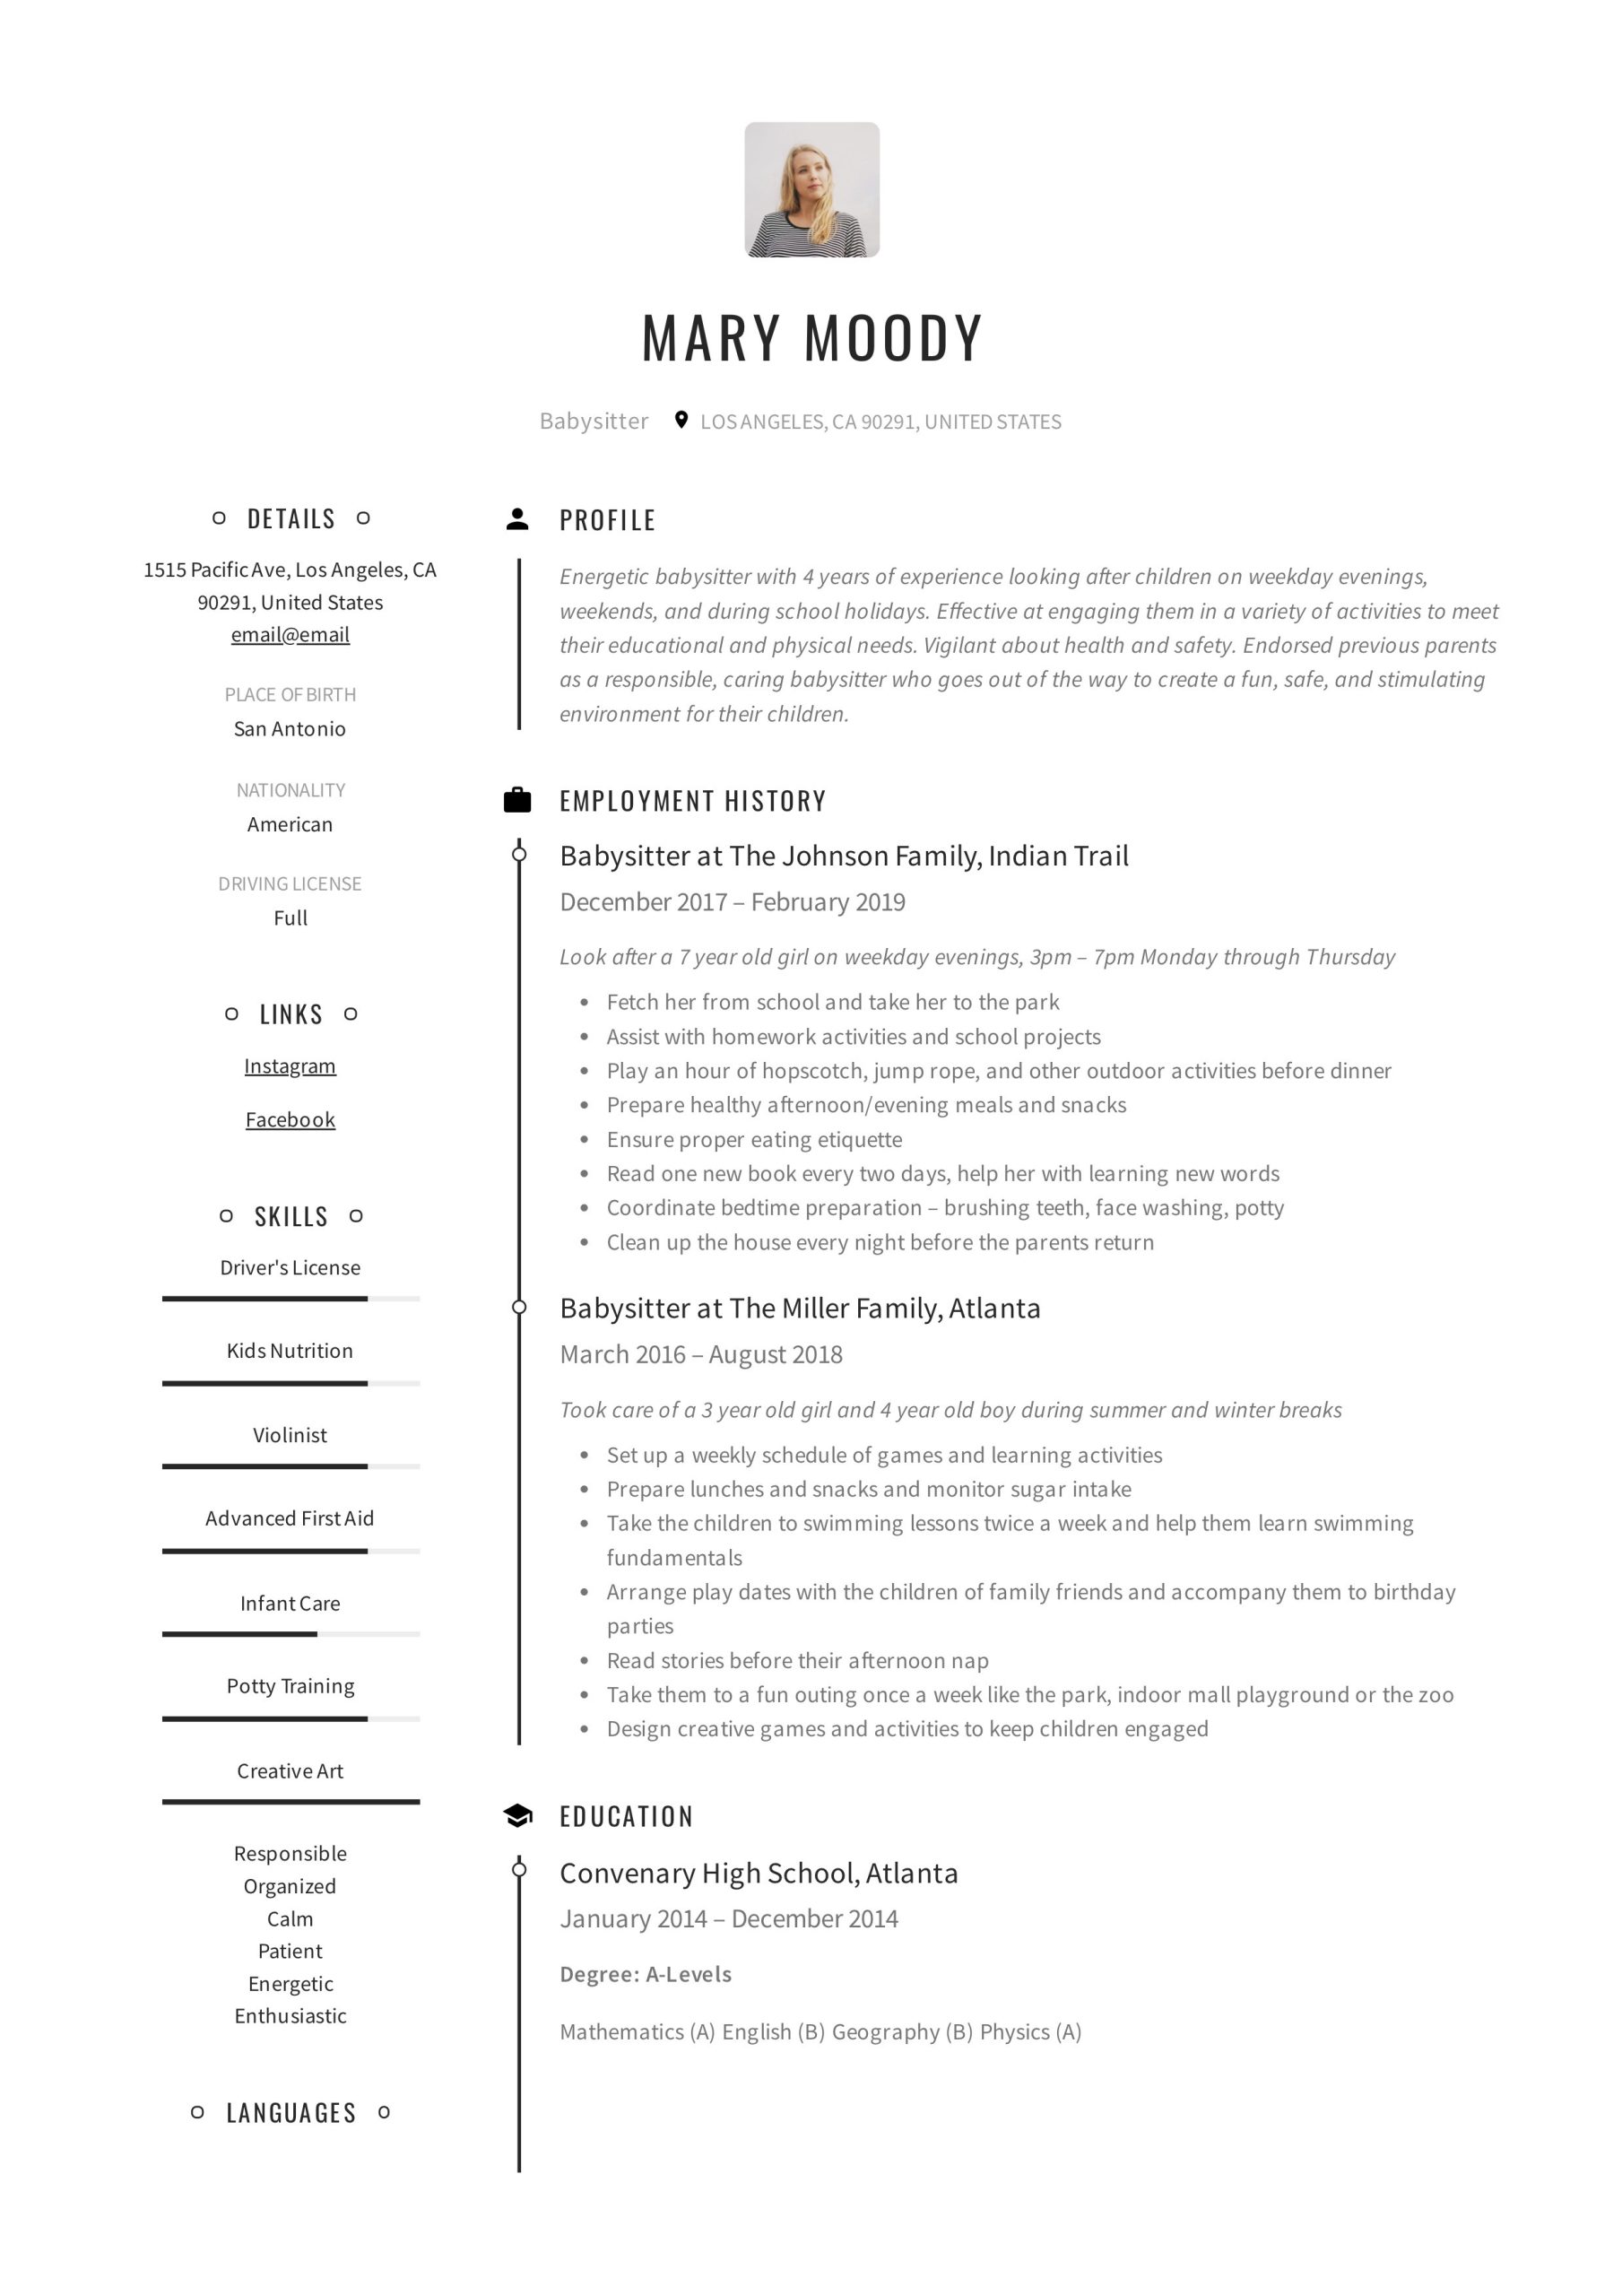 Sample Resume Job Description for Babysitter 19 Babysitter Resume Examples & Writing Guide 2022